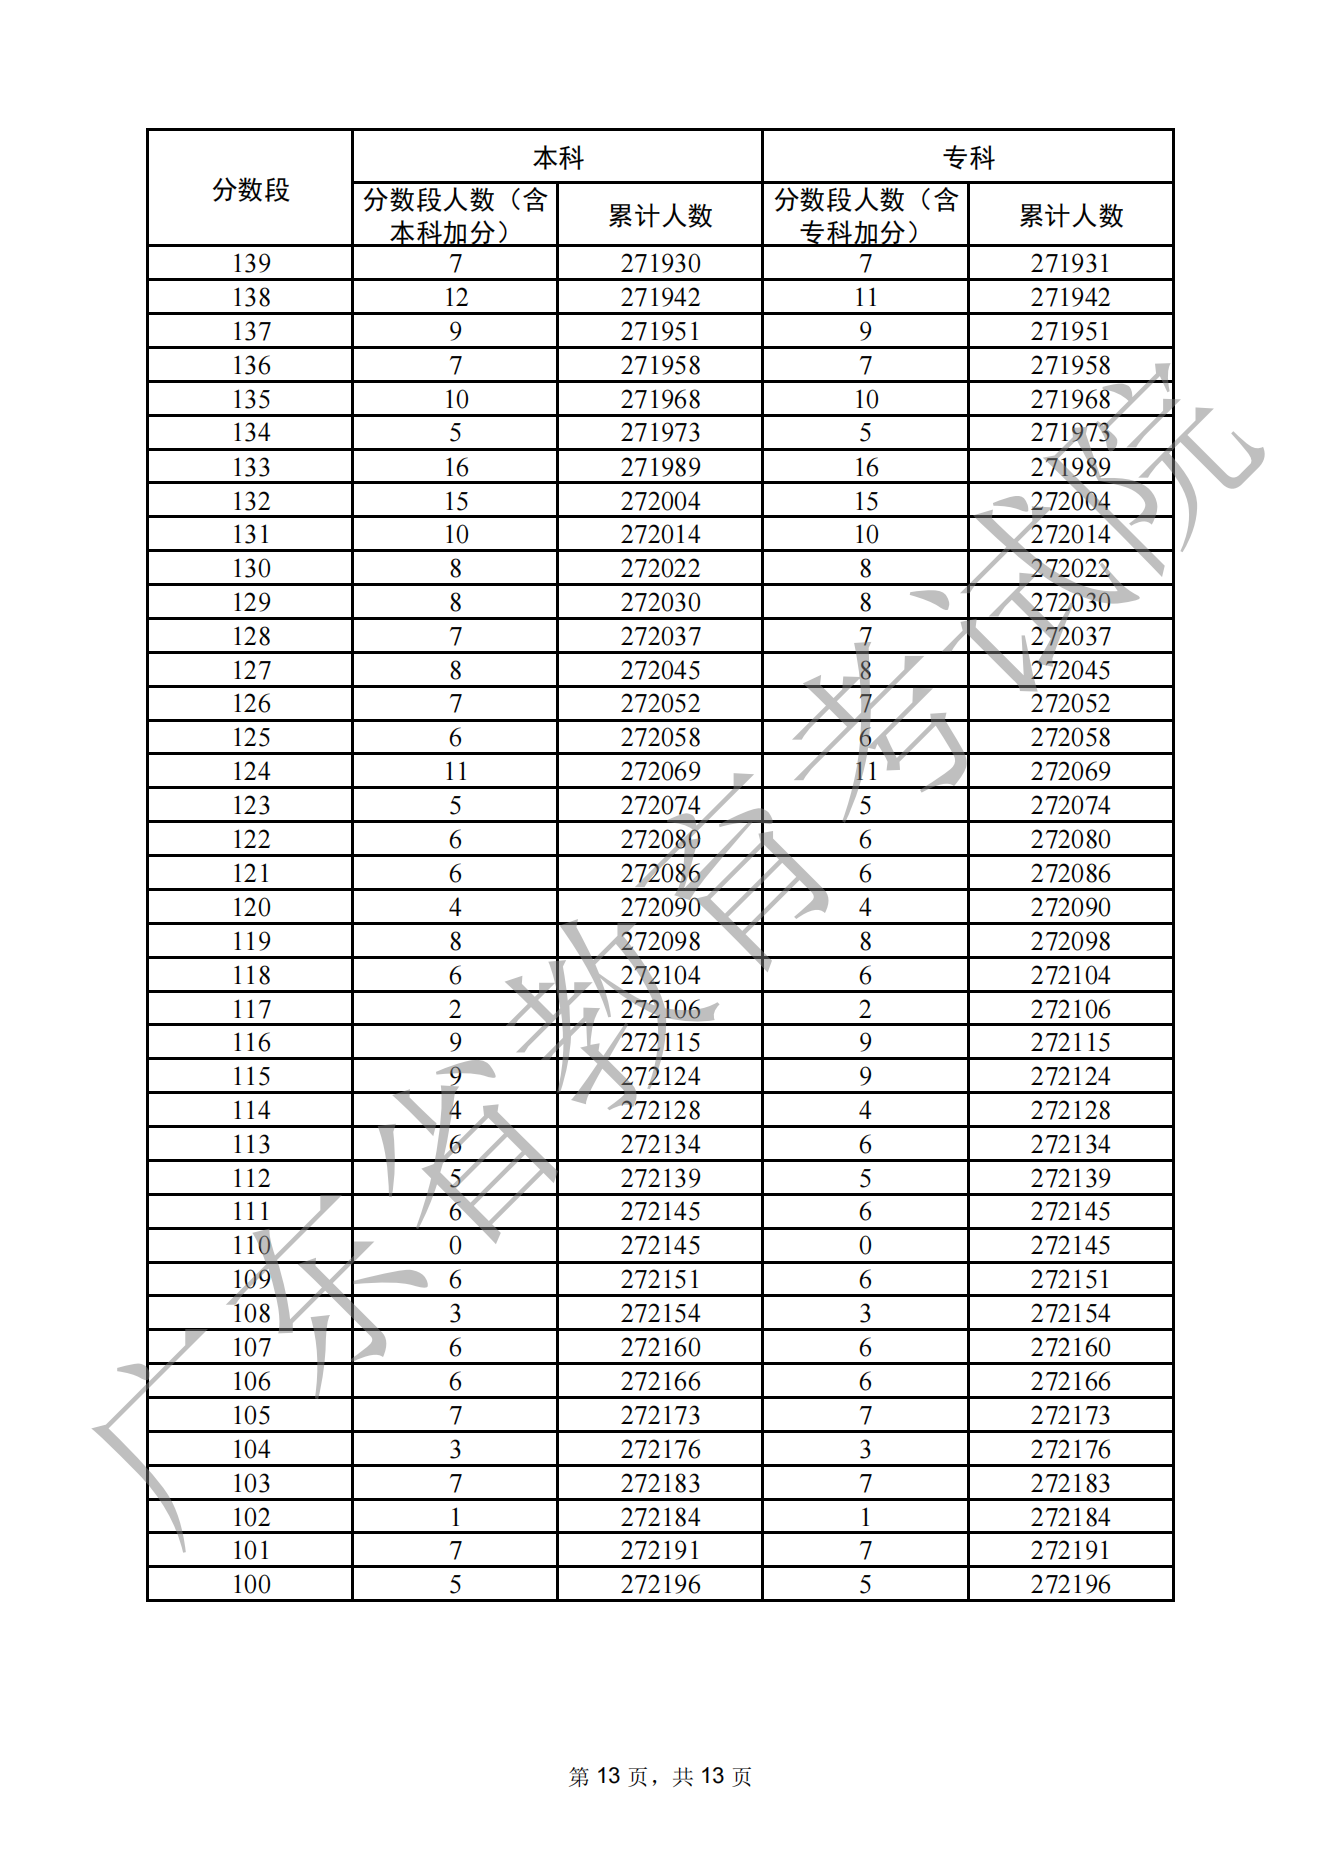 2022广东高考一分一段表,查询位次及排名（完整版）